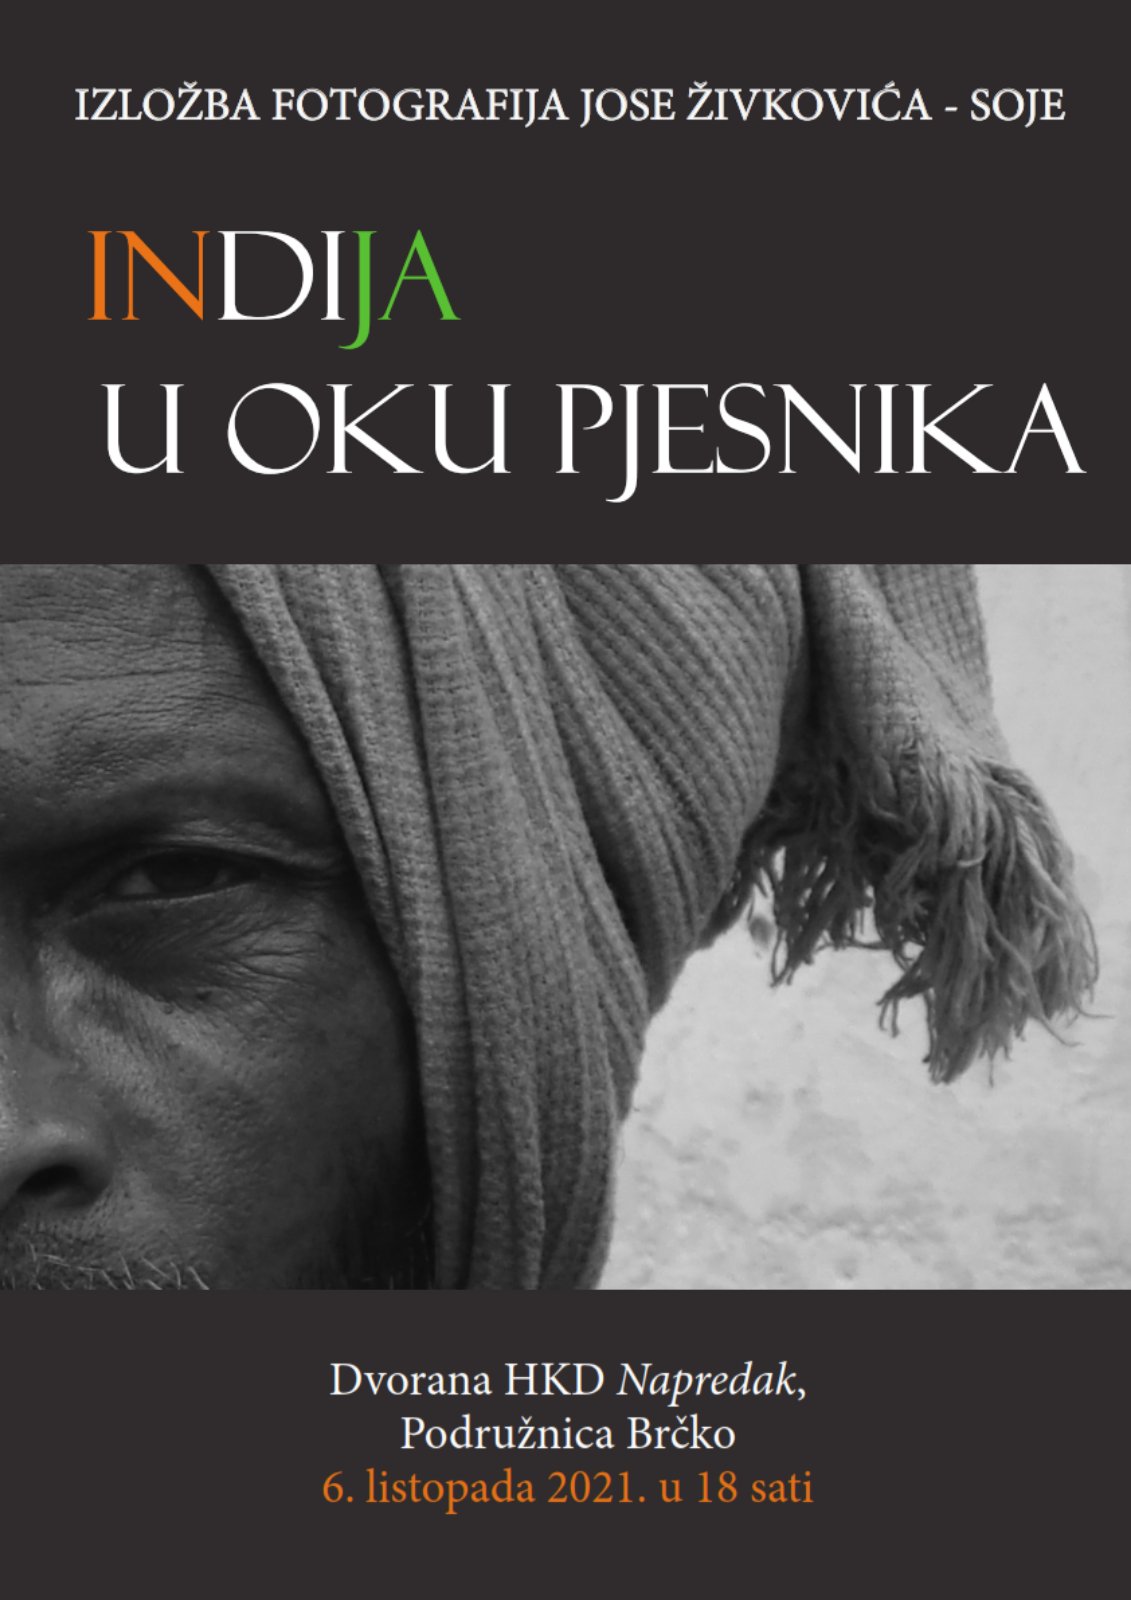 Izložba fotografija Jose Živkovića „Indija u oku pjesnika“